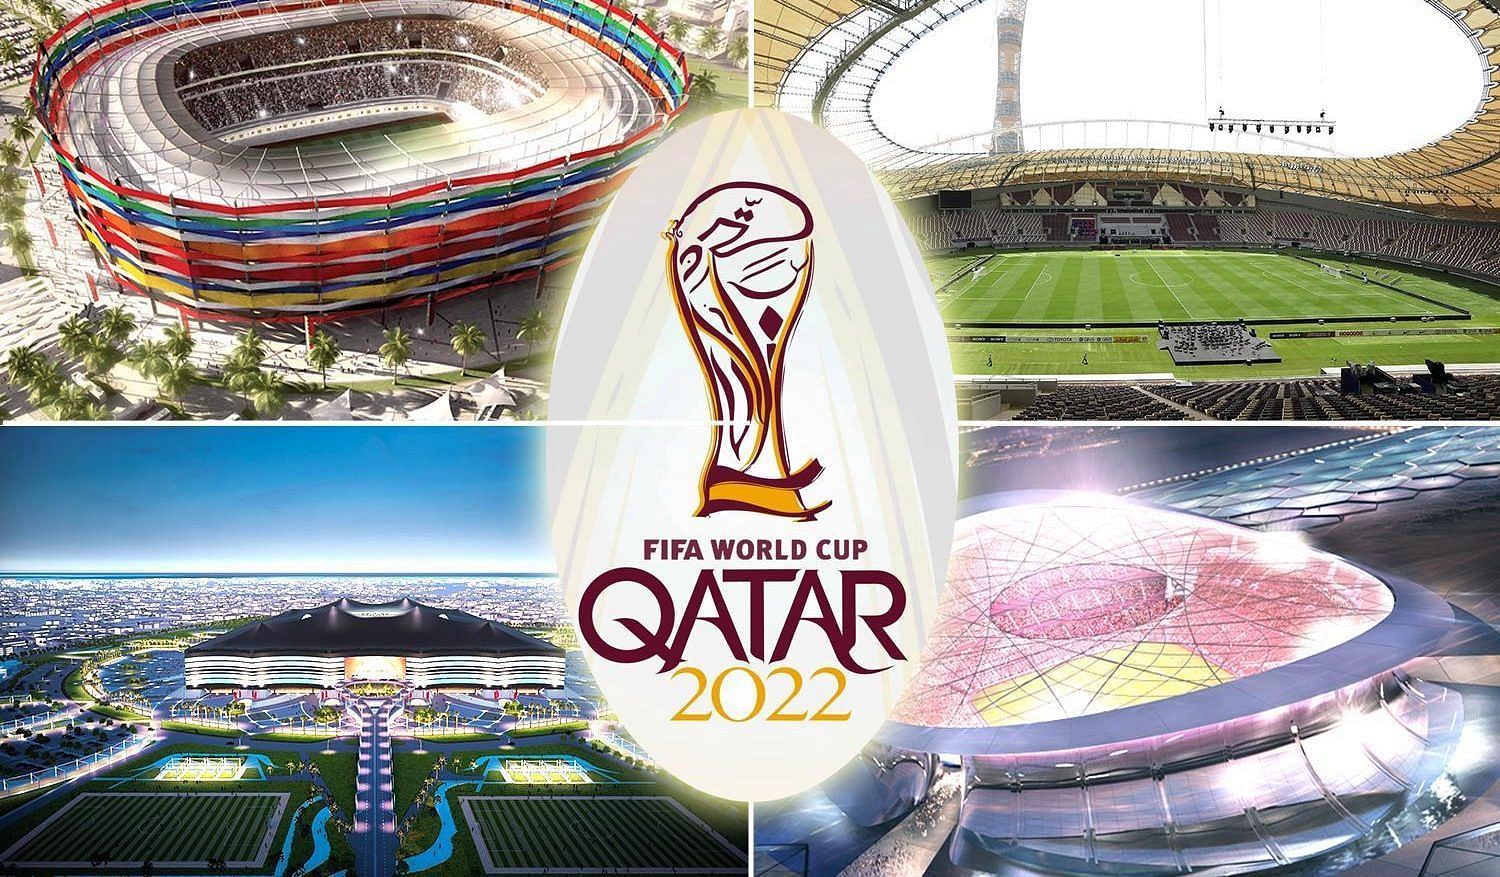 साल का सबसे बड़ा खेल आयोजन फुटबॉल विश्व कप के रूप में कतर में होगा।